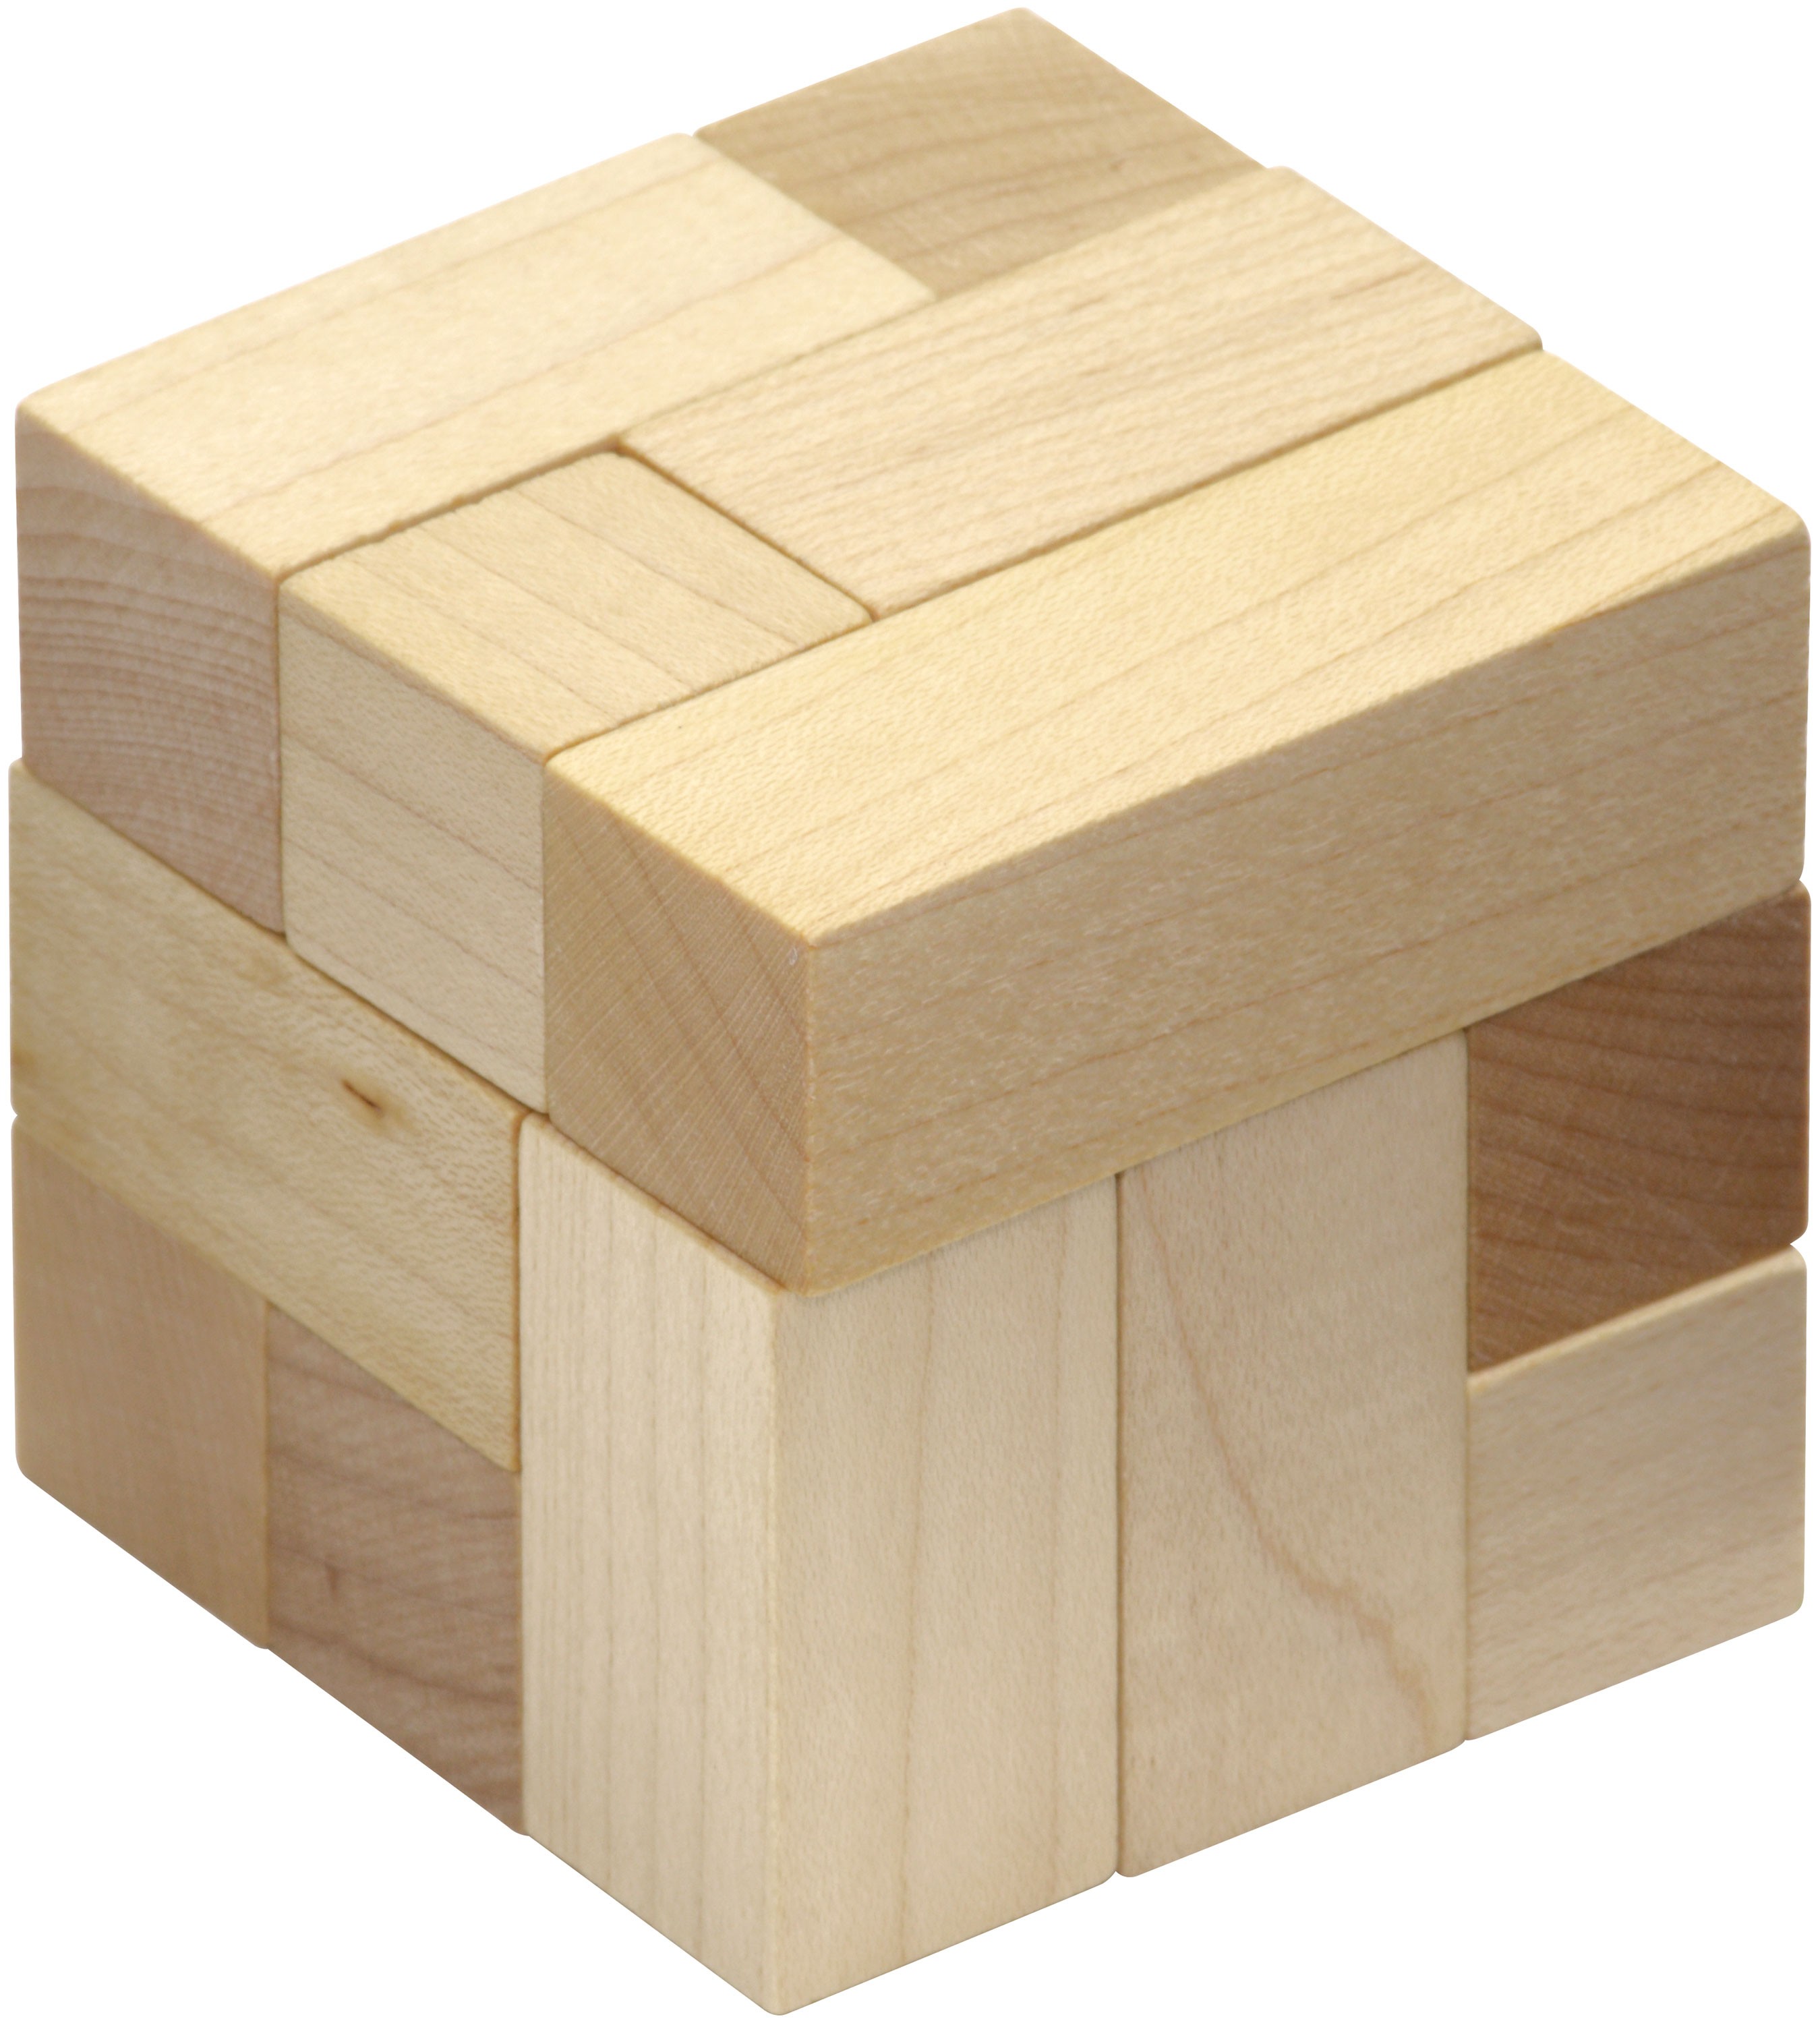 Головоломка кубы игра. Головоломка куб сома s105. Деревянная головоломка куб. Головоломка деревянный кубик. Головоломка кубики сома.